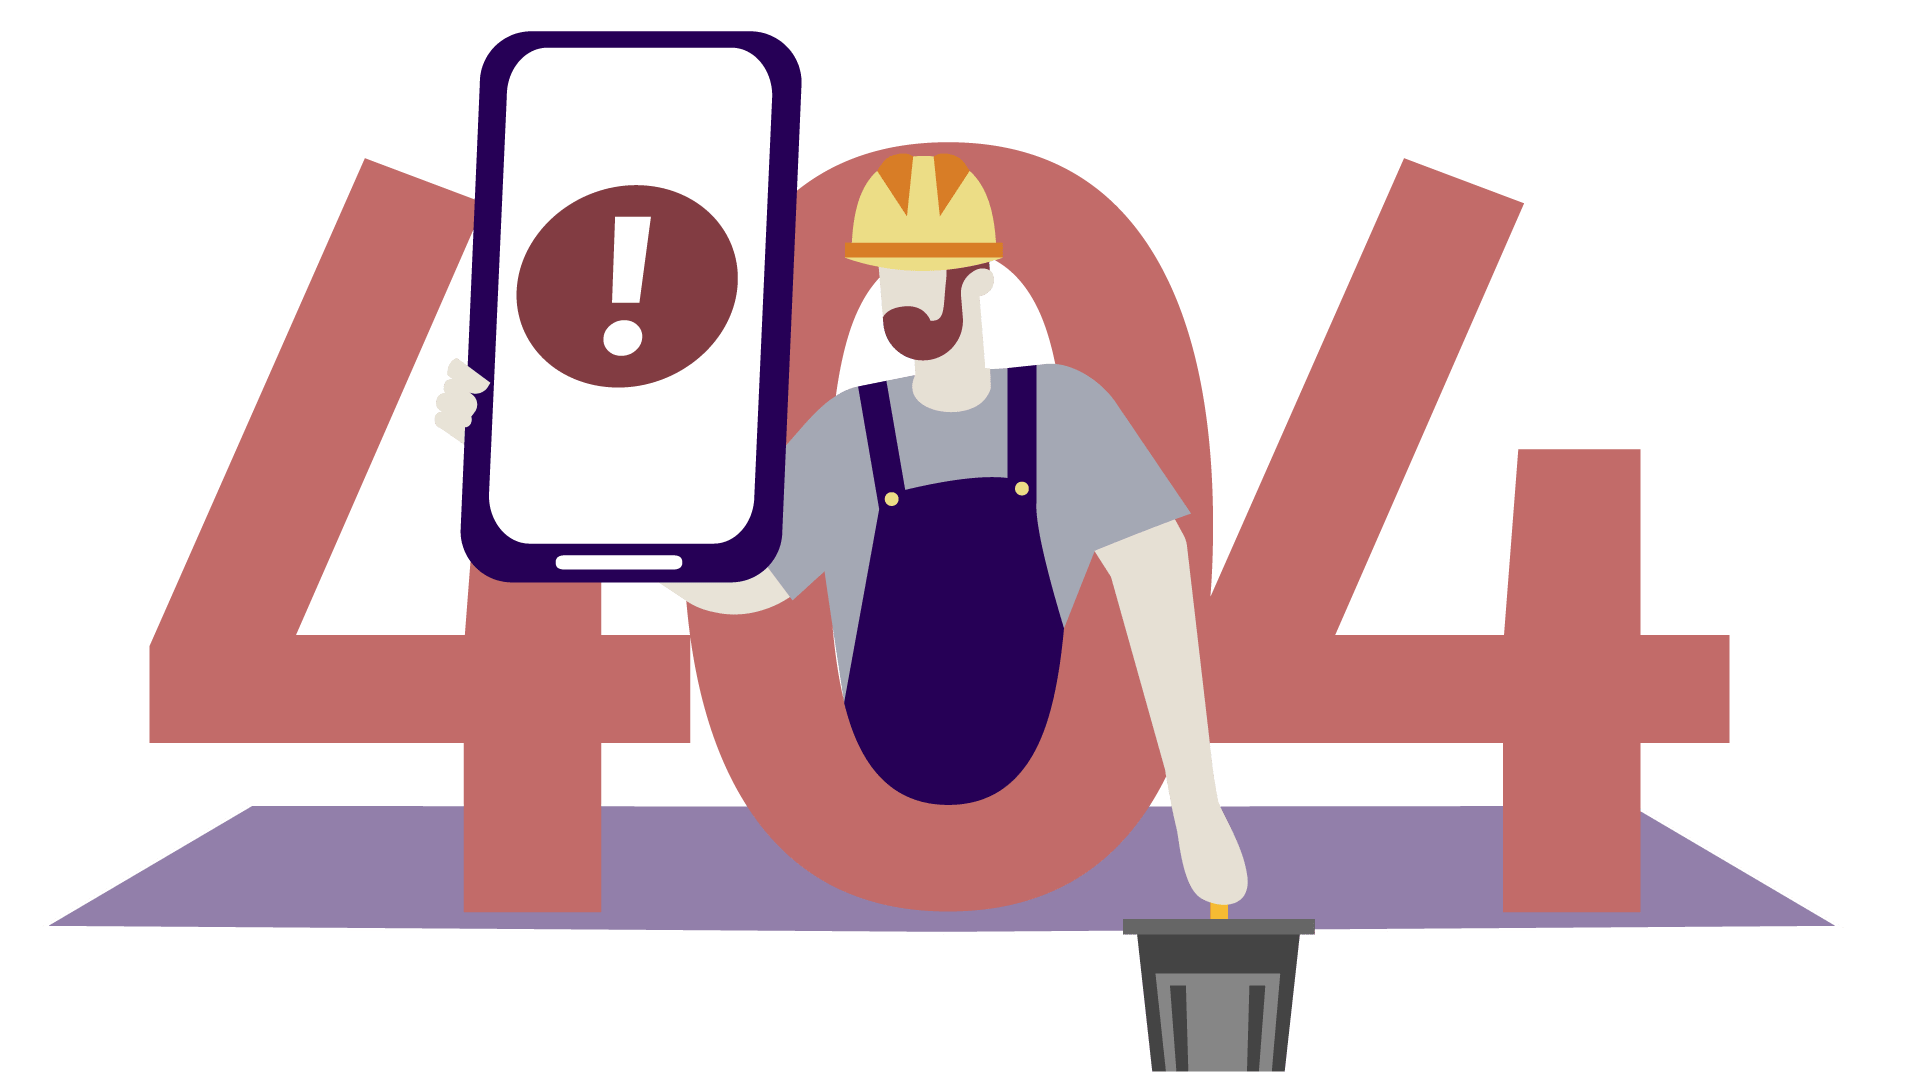 Die Zahl 404. In der Mitte der 0 ein Bauarbeiter mit übergroßem Handy, auf dem Display ein Ausrufezeichen. An dieser Seite wird zur Zeit gearbeitet.